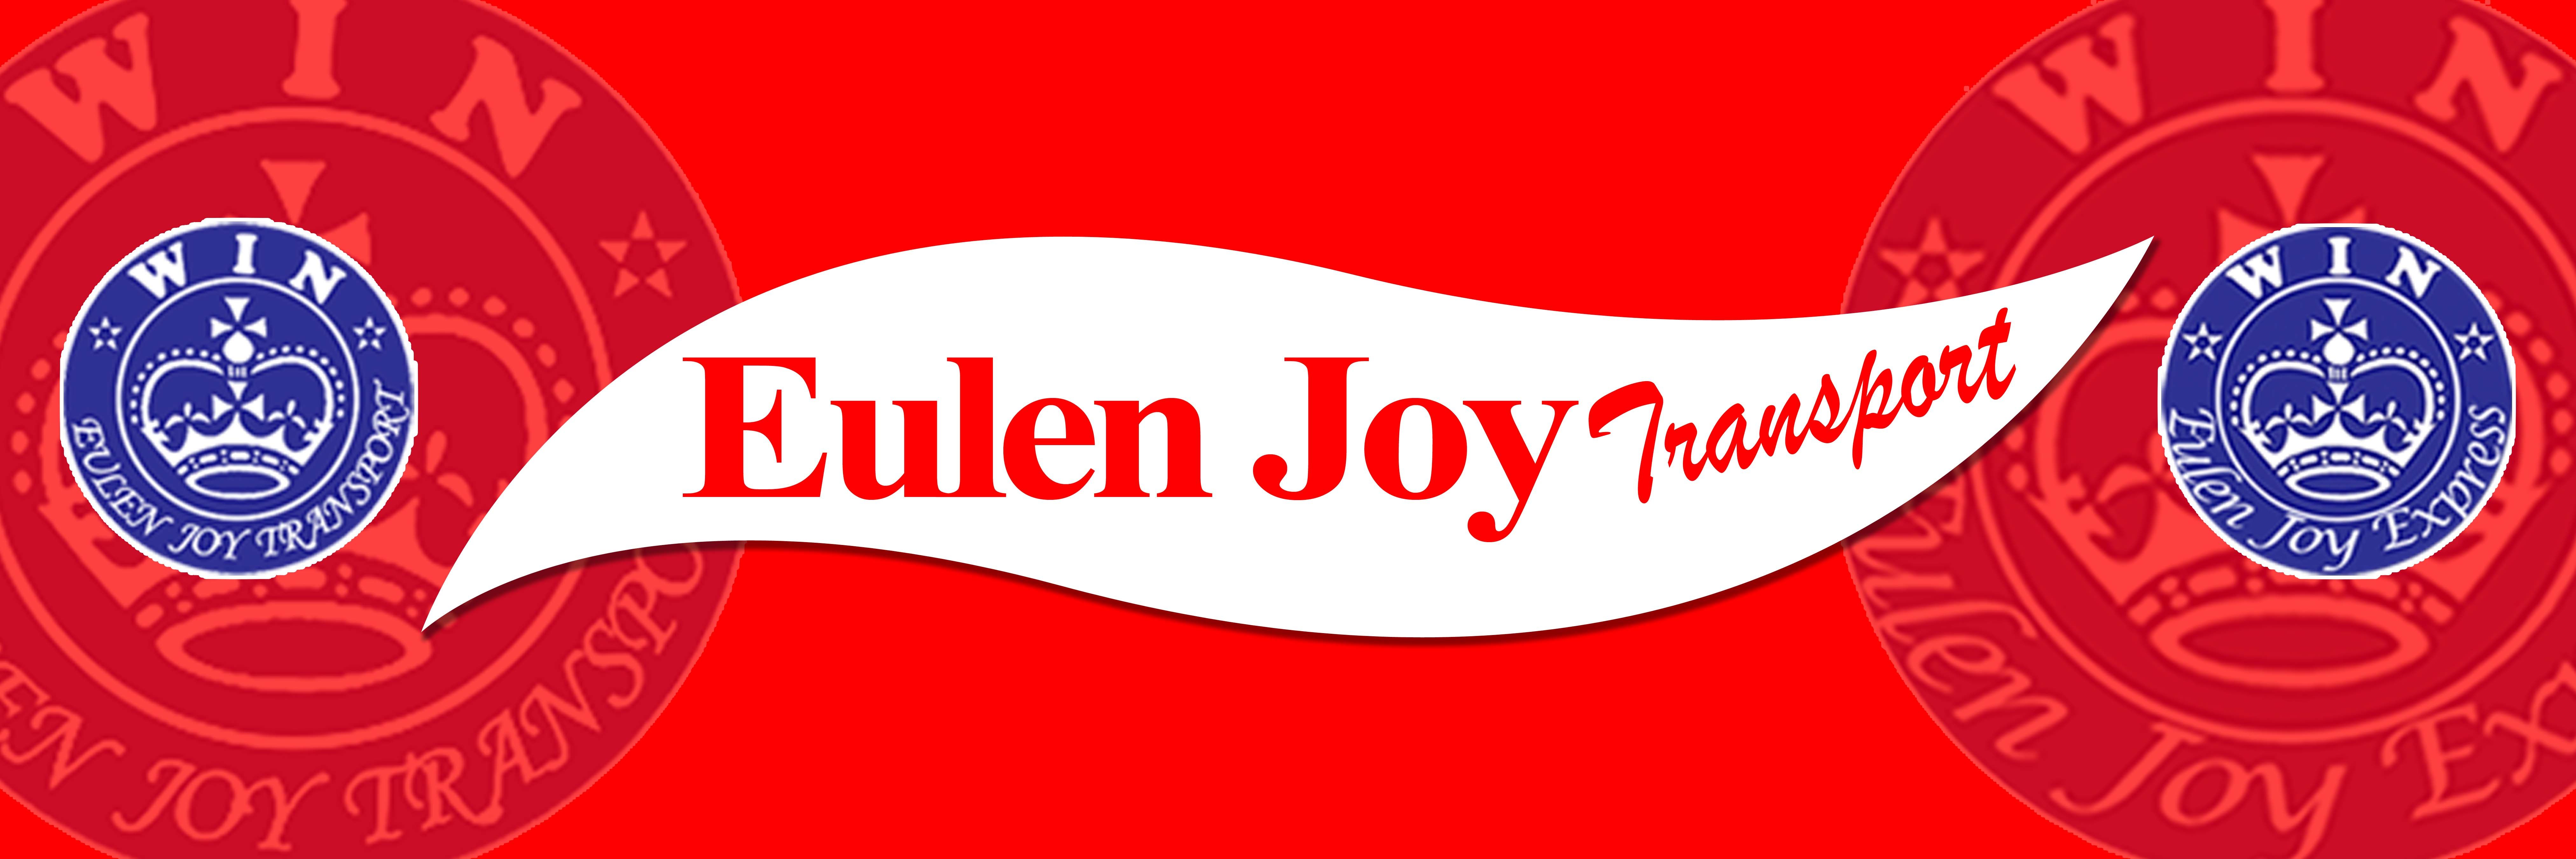 Eulen Joy Express logo